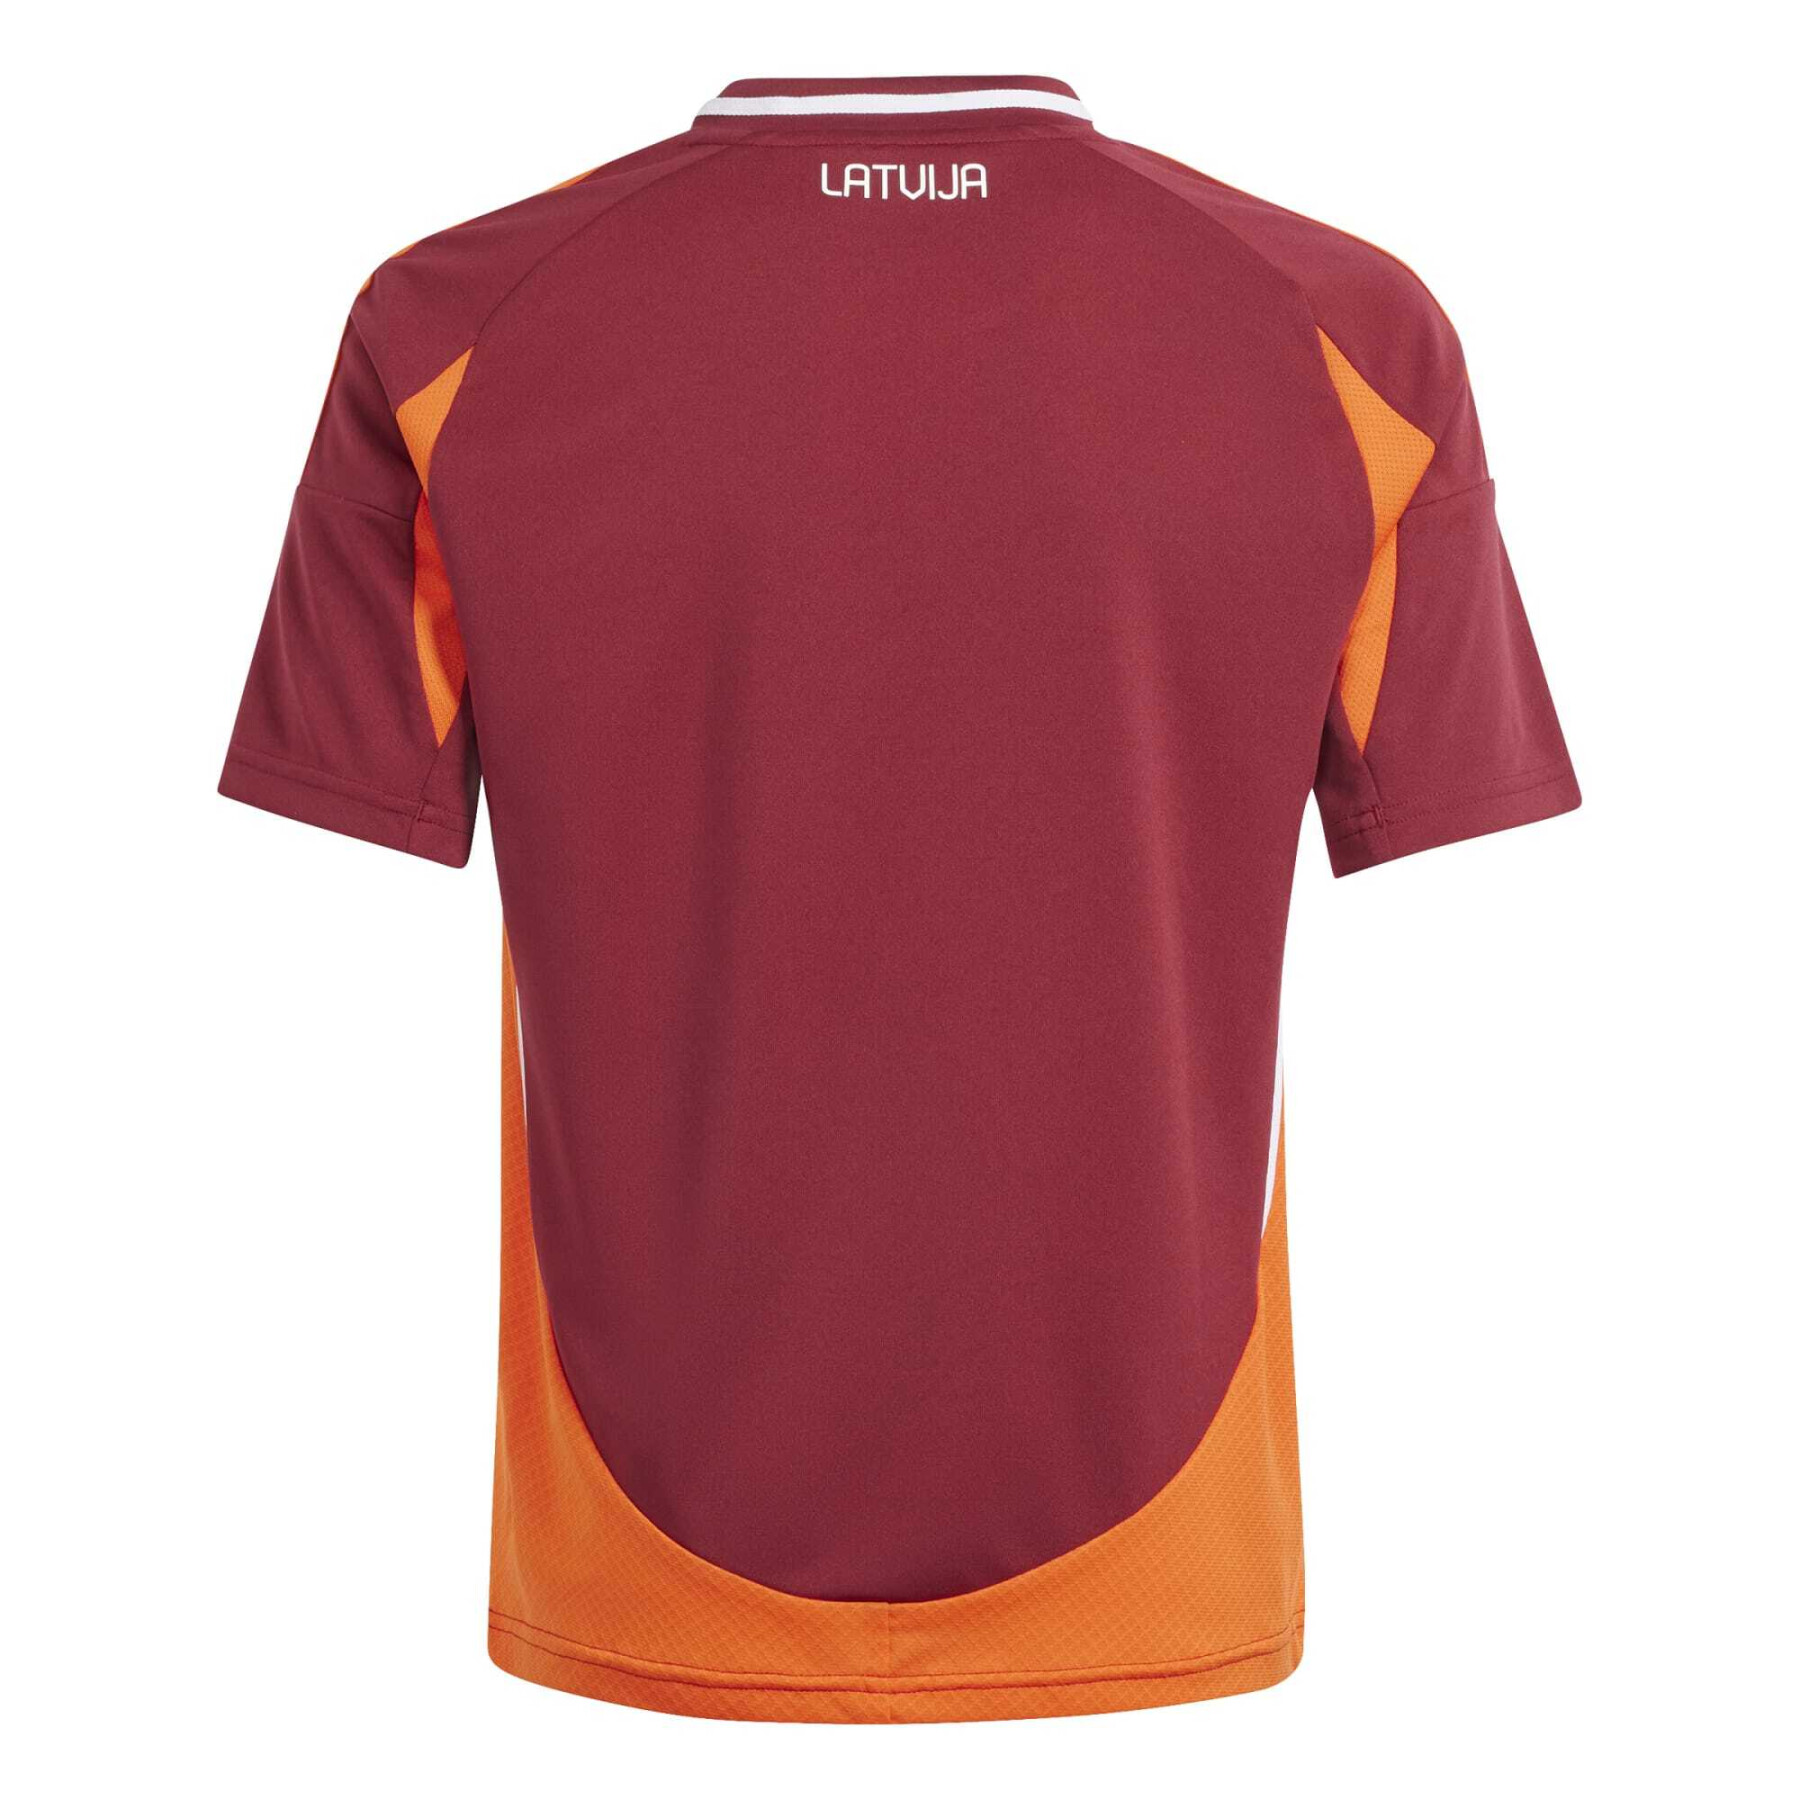 Camiseta primera equipación infantil Lettonie Euro 2024